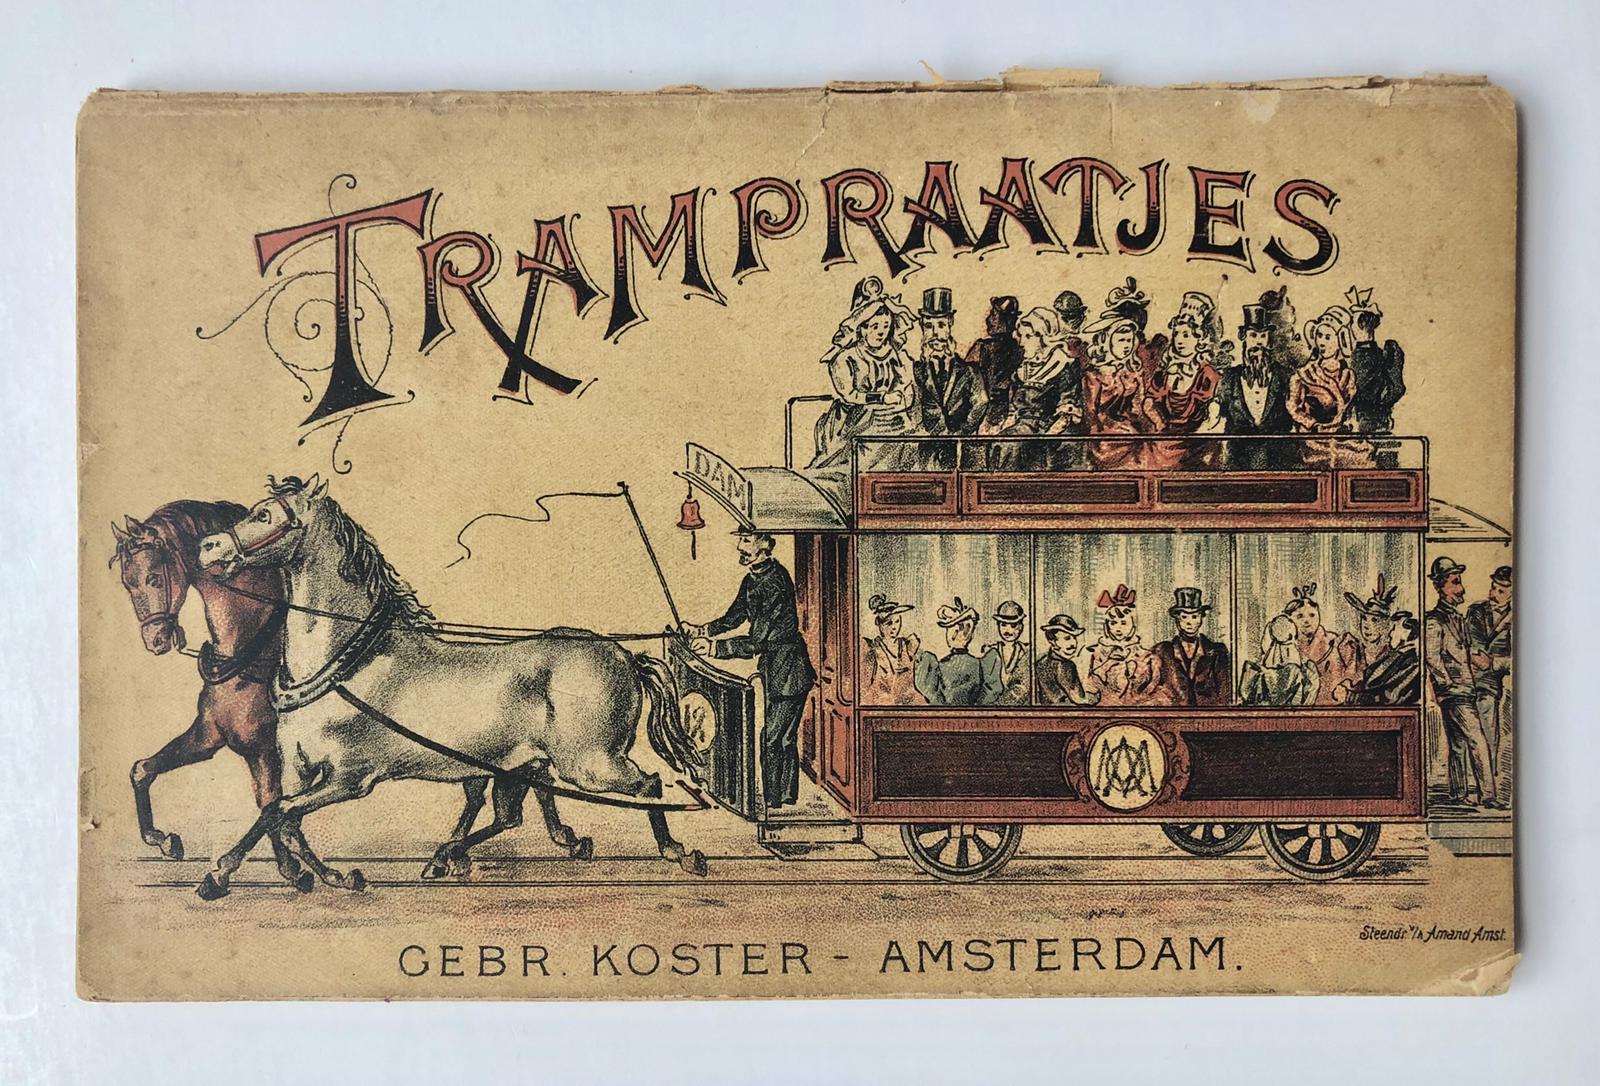 [Transport, Tram, 1896] Jan Courage, 'Trampraatjes', Amsterdam, gebr. Koster, 1896. Gedrukt boekje van 68 pag. Met proza en poezie over de tram met fraai omslag (steendruk Amand) met afbeelding in kleur van een volgeladen paardentram.